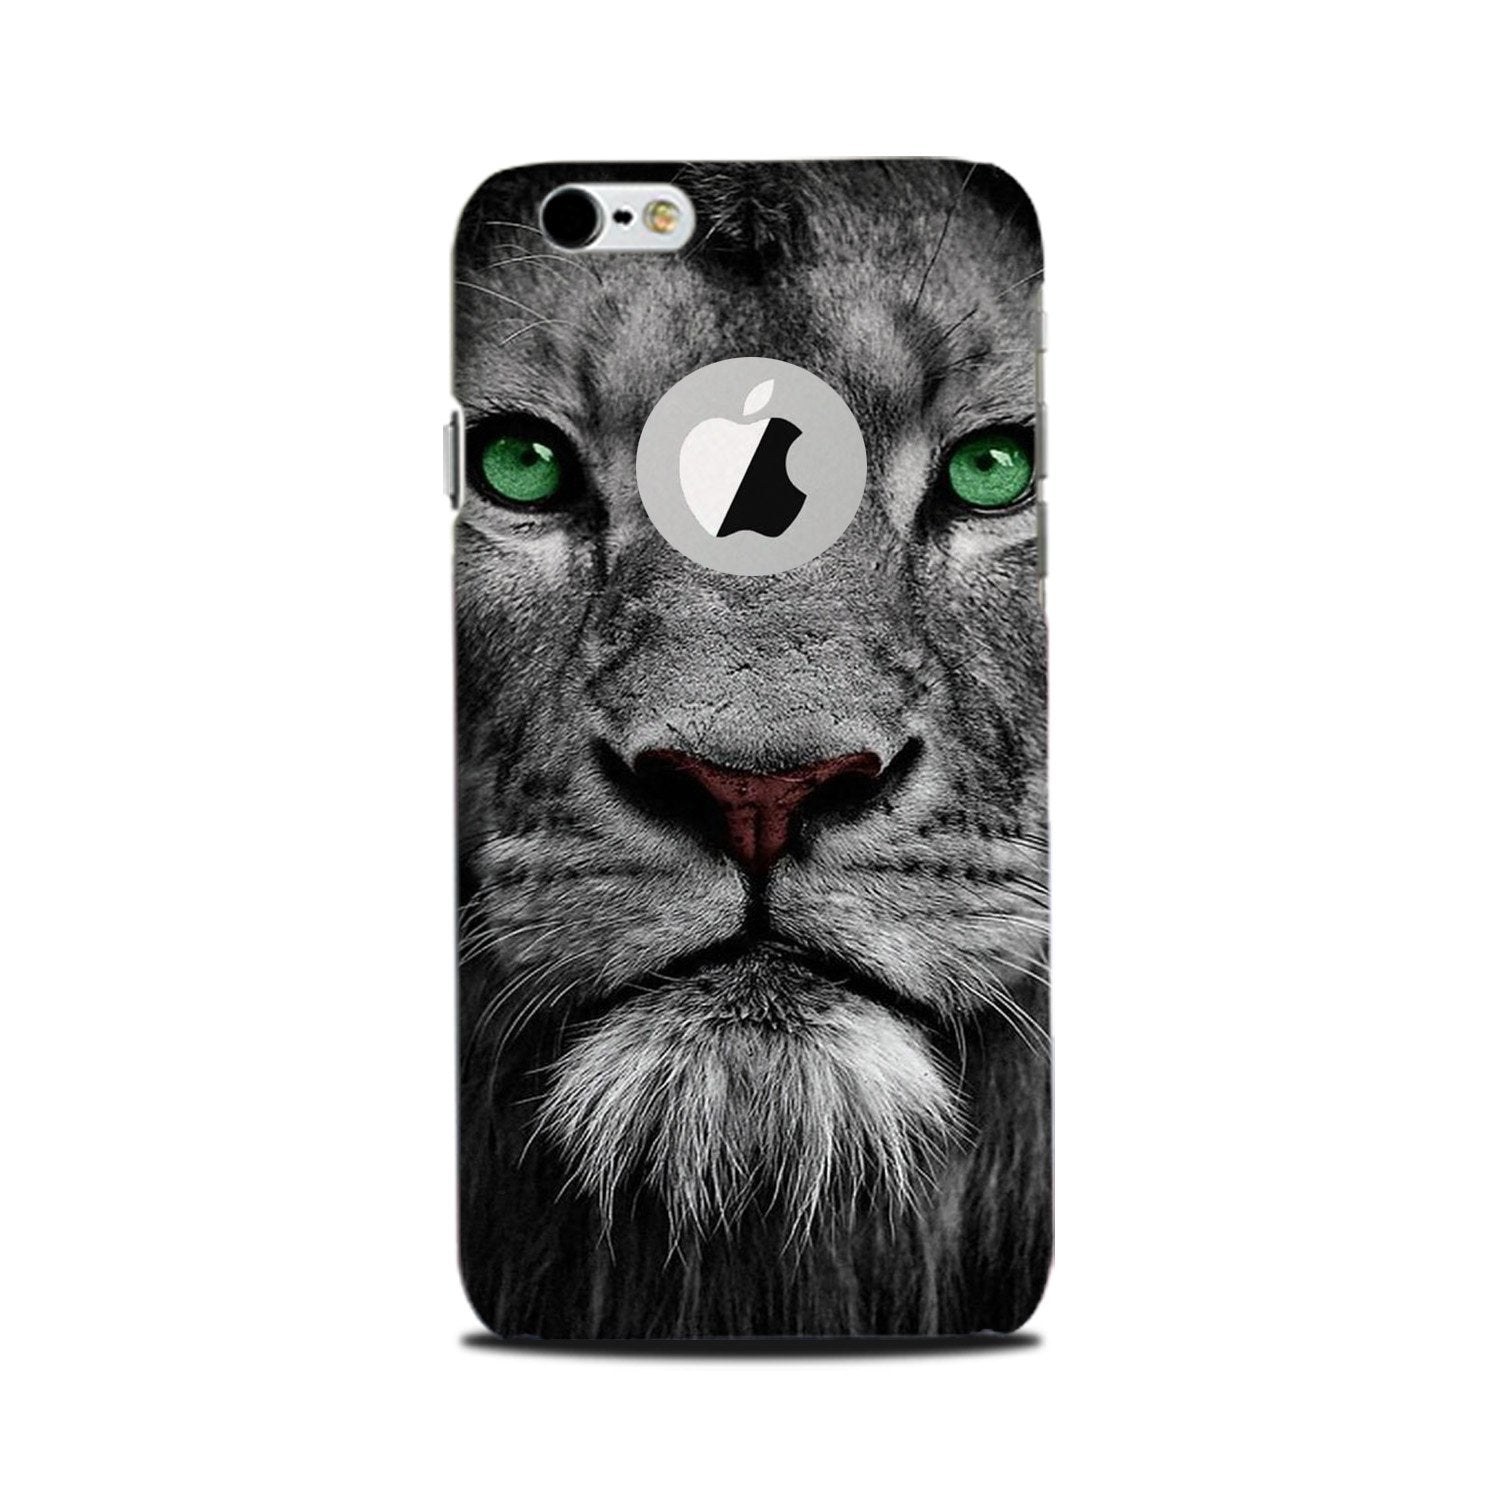 Lion Case for iPhone 6 Plus / 6s Plus logo cut(Design No. 272)